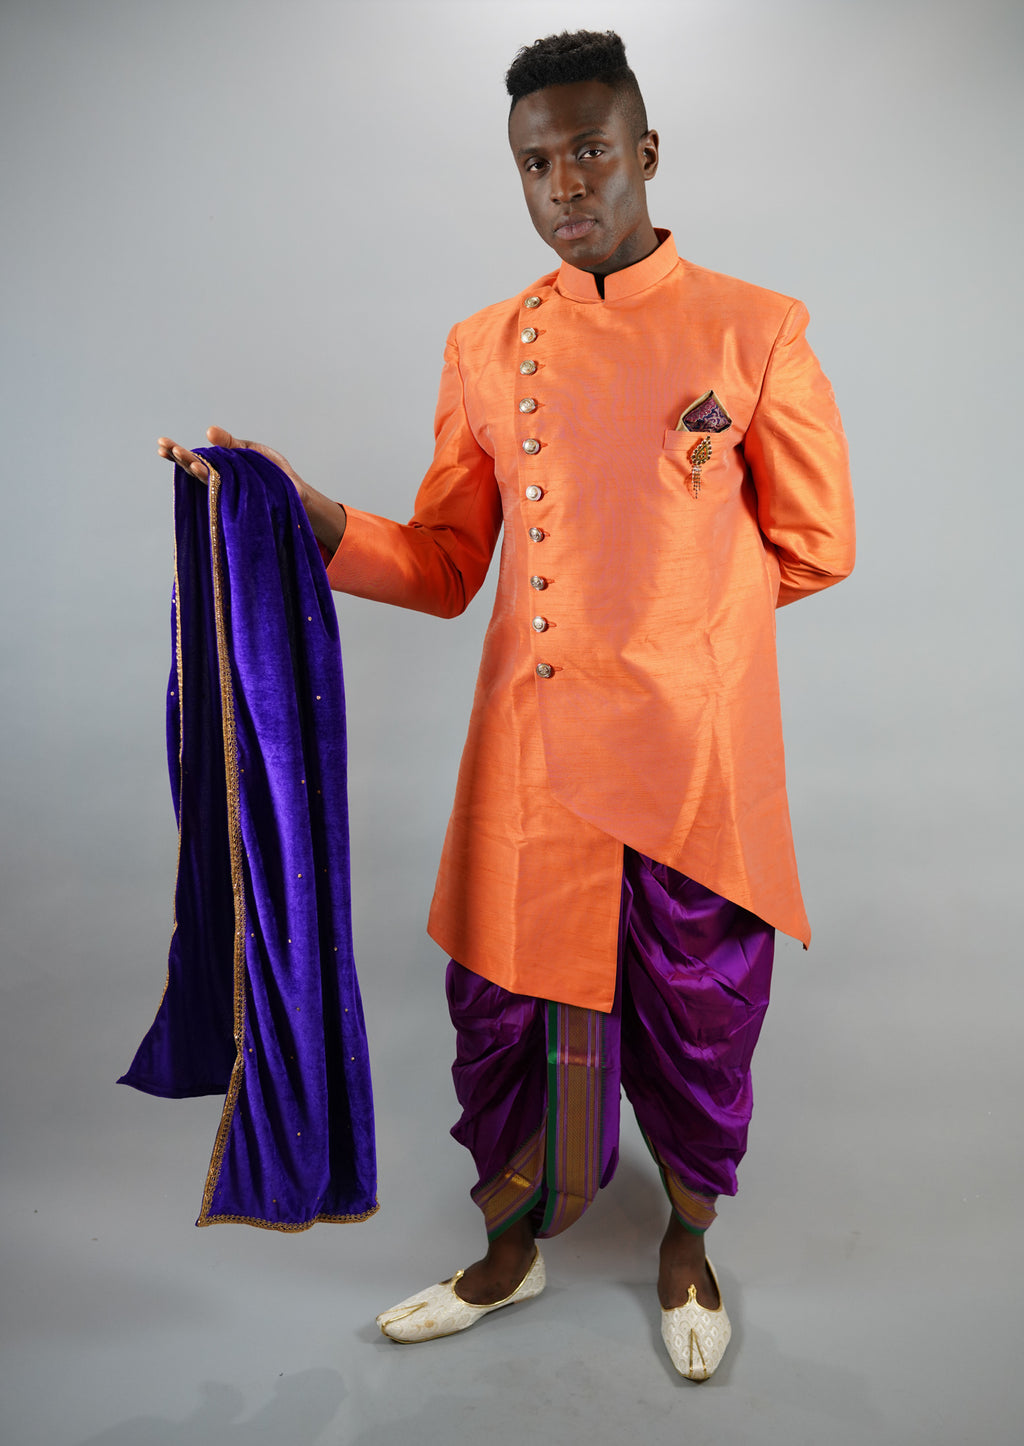 Silk Asymmetric Tiger Orange Long Sherwani / Jacket